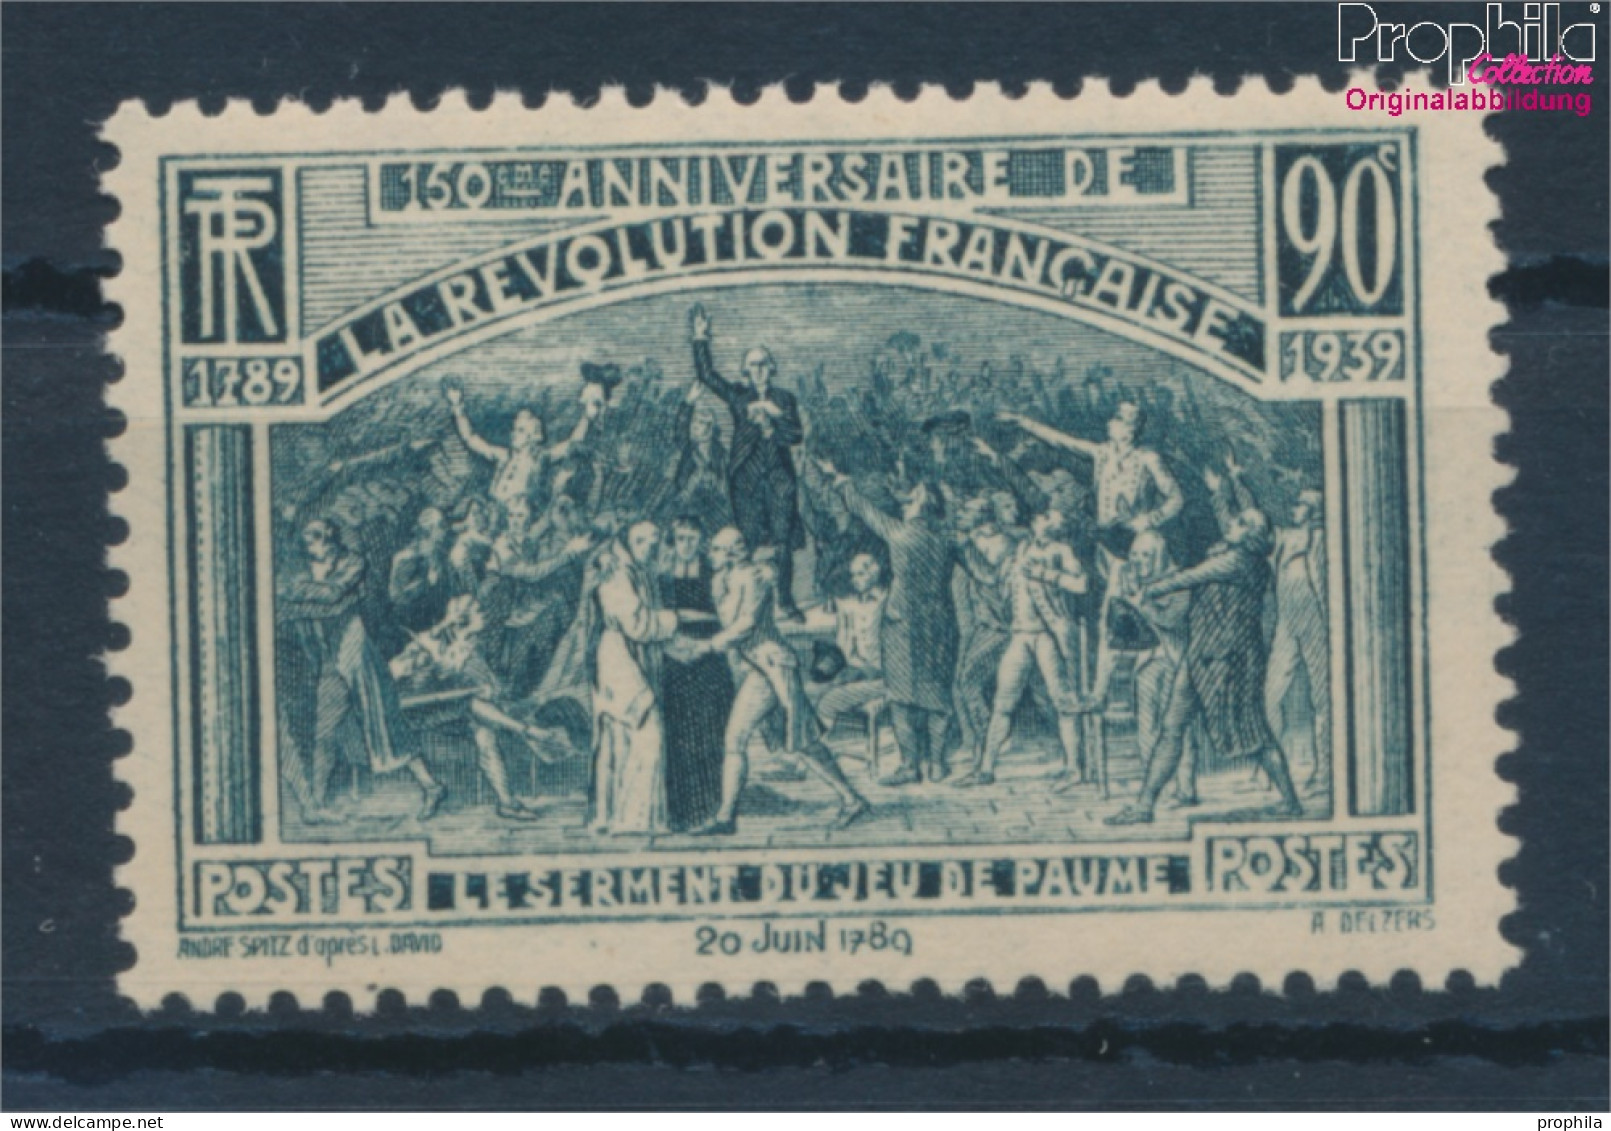 Frankreich 457 (kompl.Ausg.) Postfrisch 1939 Französische Revolution (10354719 - Unused Stamps